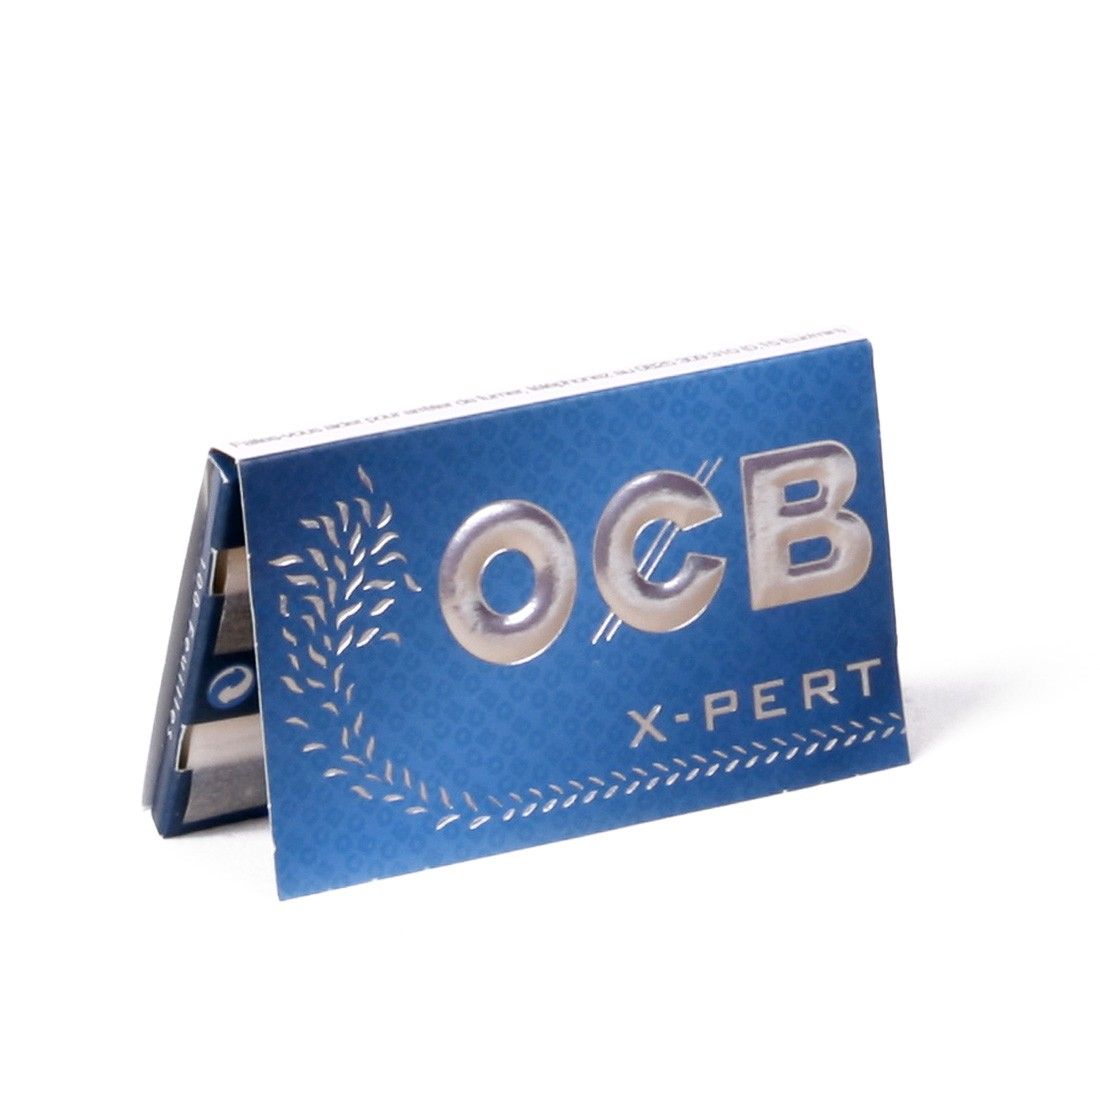 OCB courtes doubles X-pert blue 2 boite de 25 carnets de 100 feuilles 